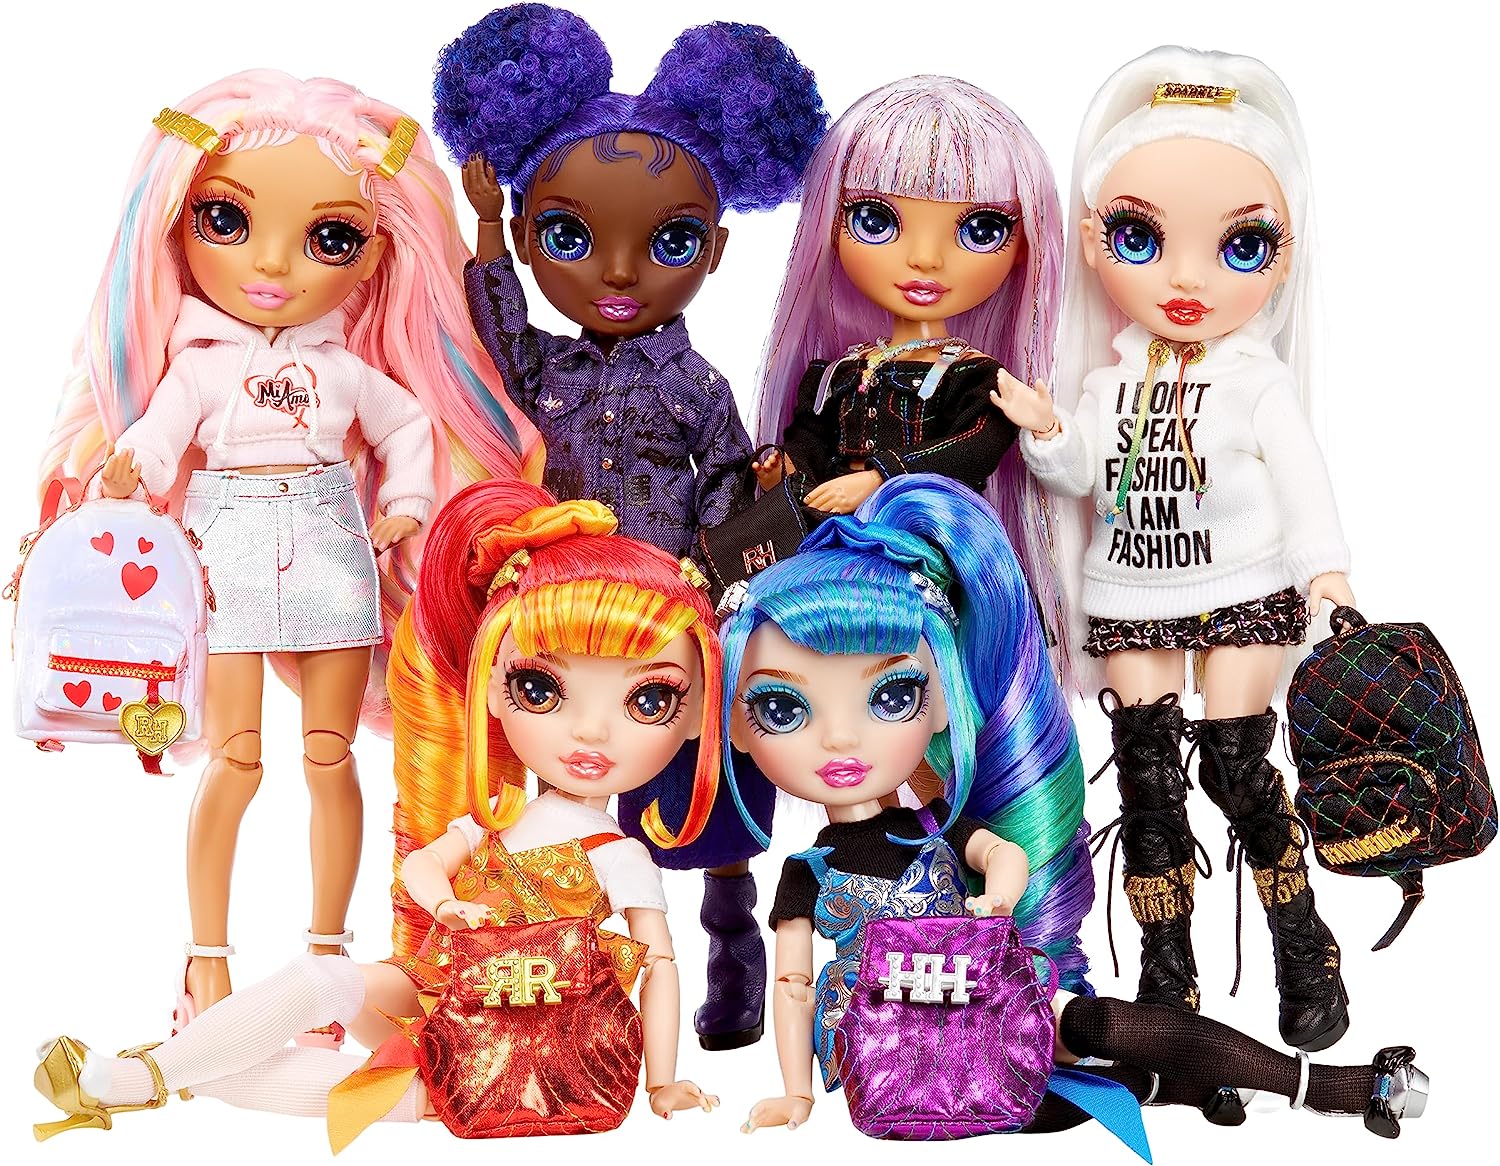 https://www.youloveit.com/uploads/posts/2023-06/1687856407_youloveit_com_rainbow_high_junior_high_new_dolls.jpg